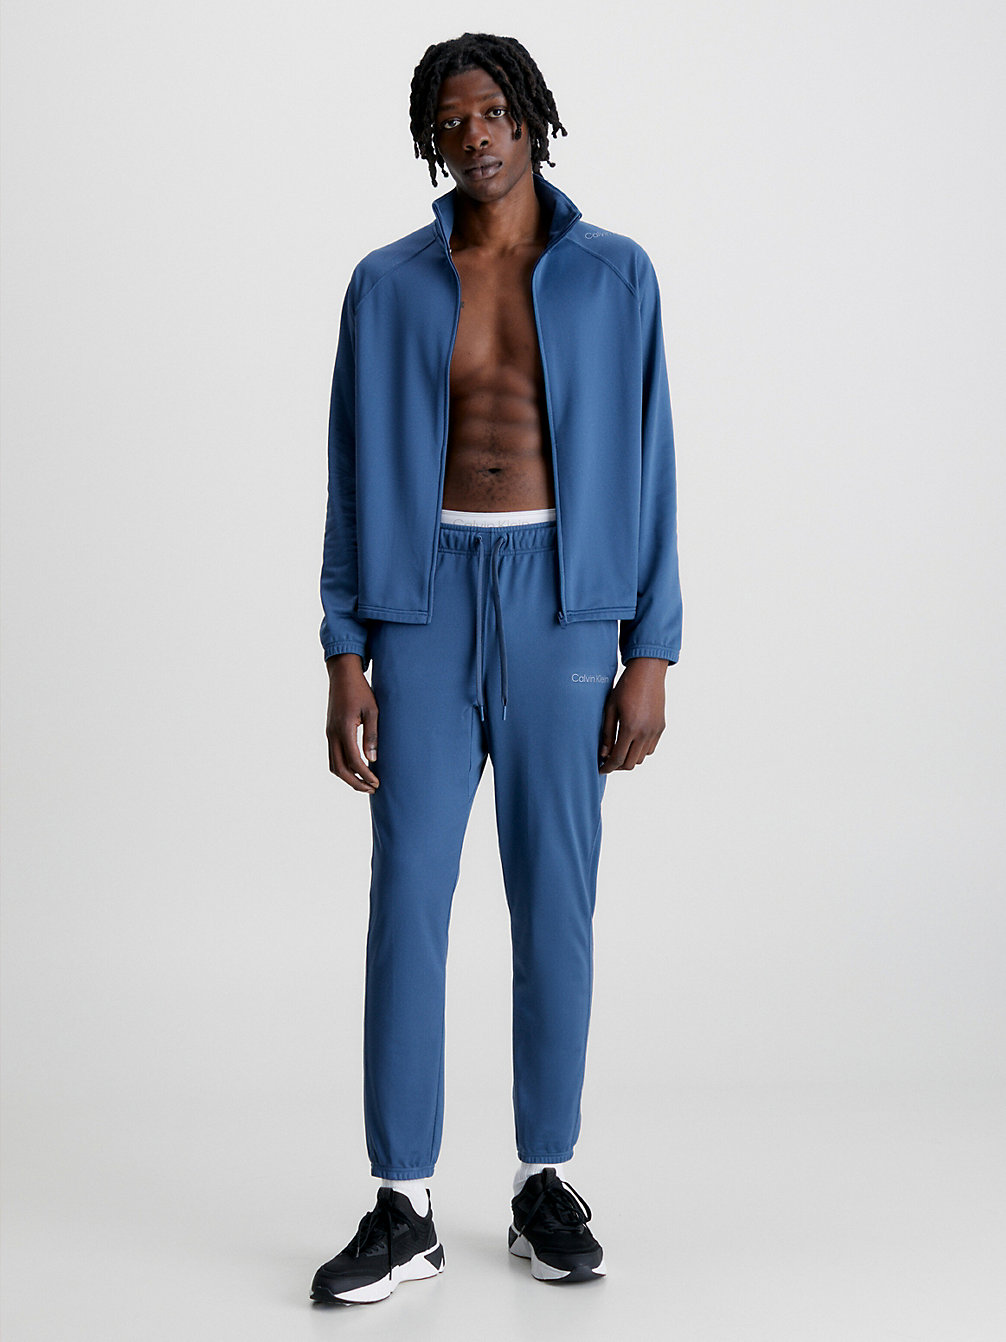 CRAYON BLUE > Bequemer Trainingsanzug > undefined men - Calvin Klein